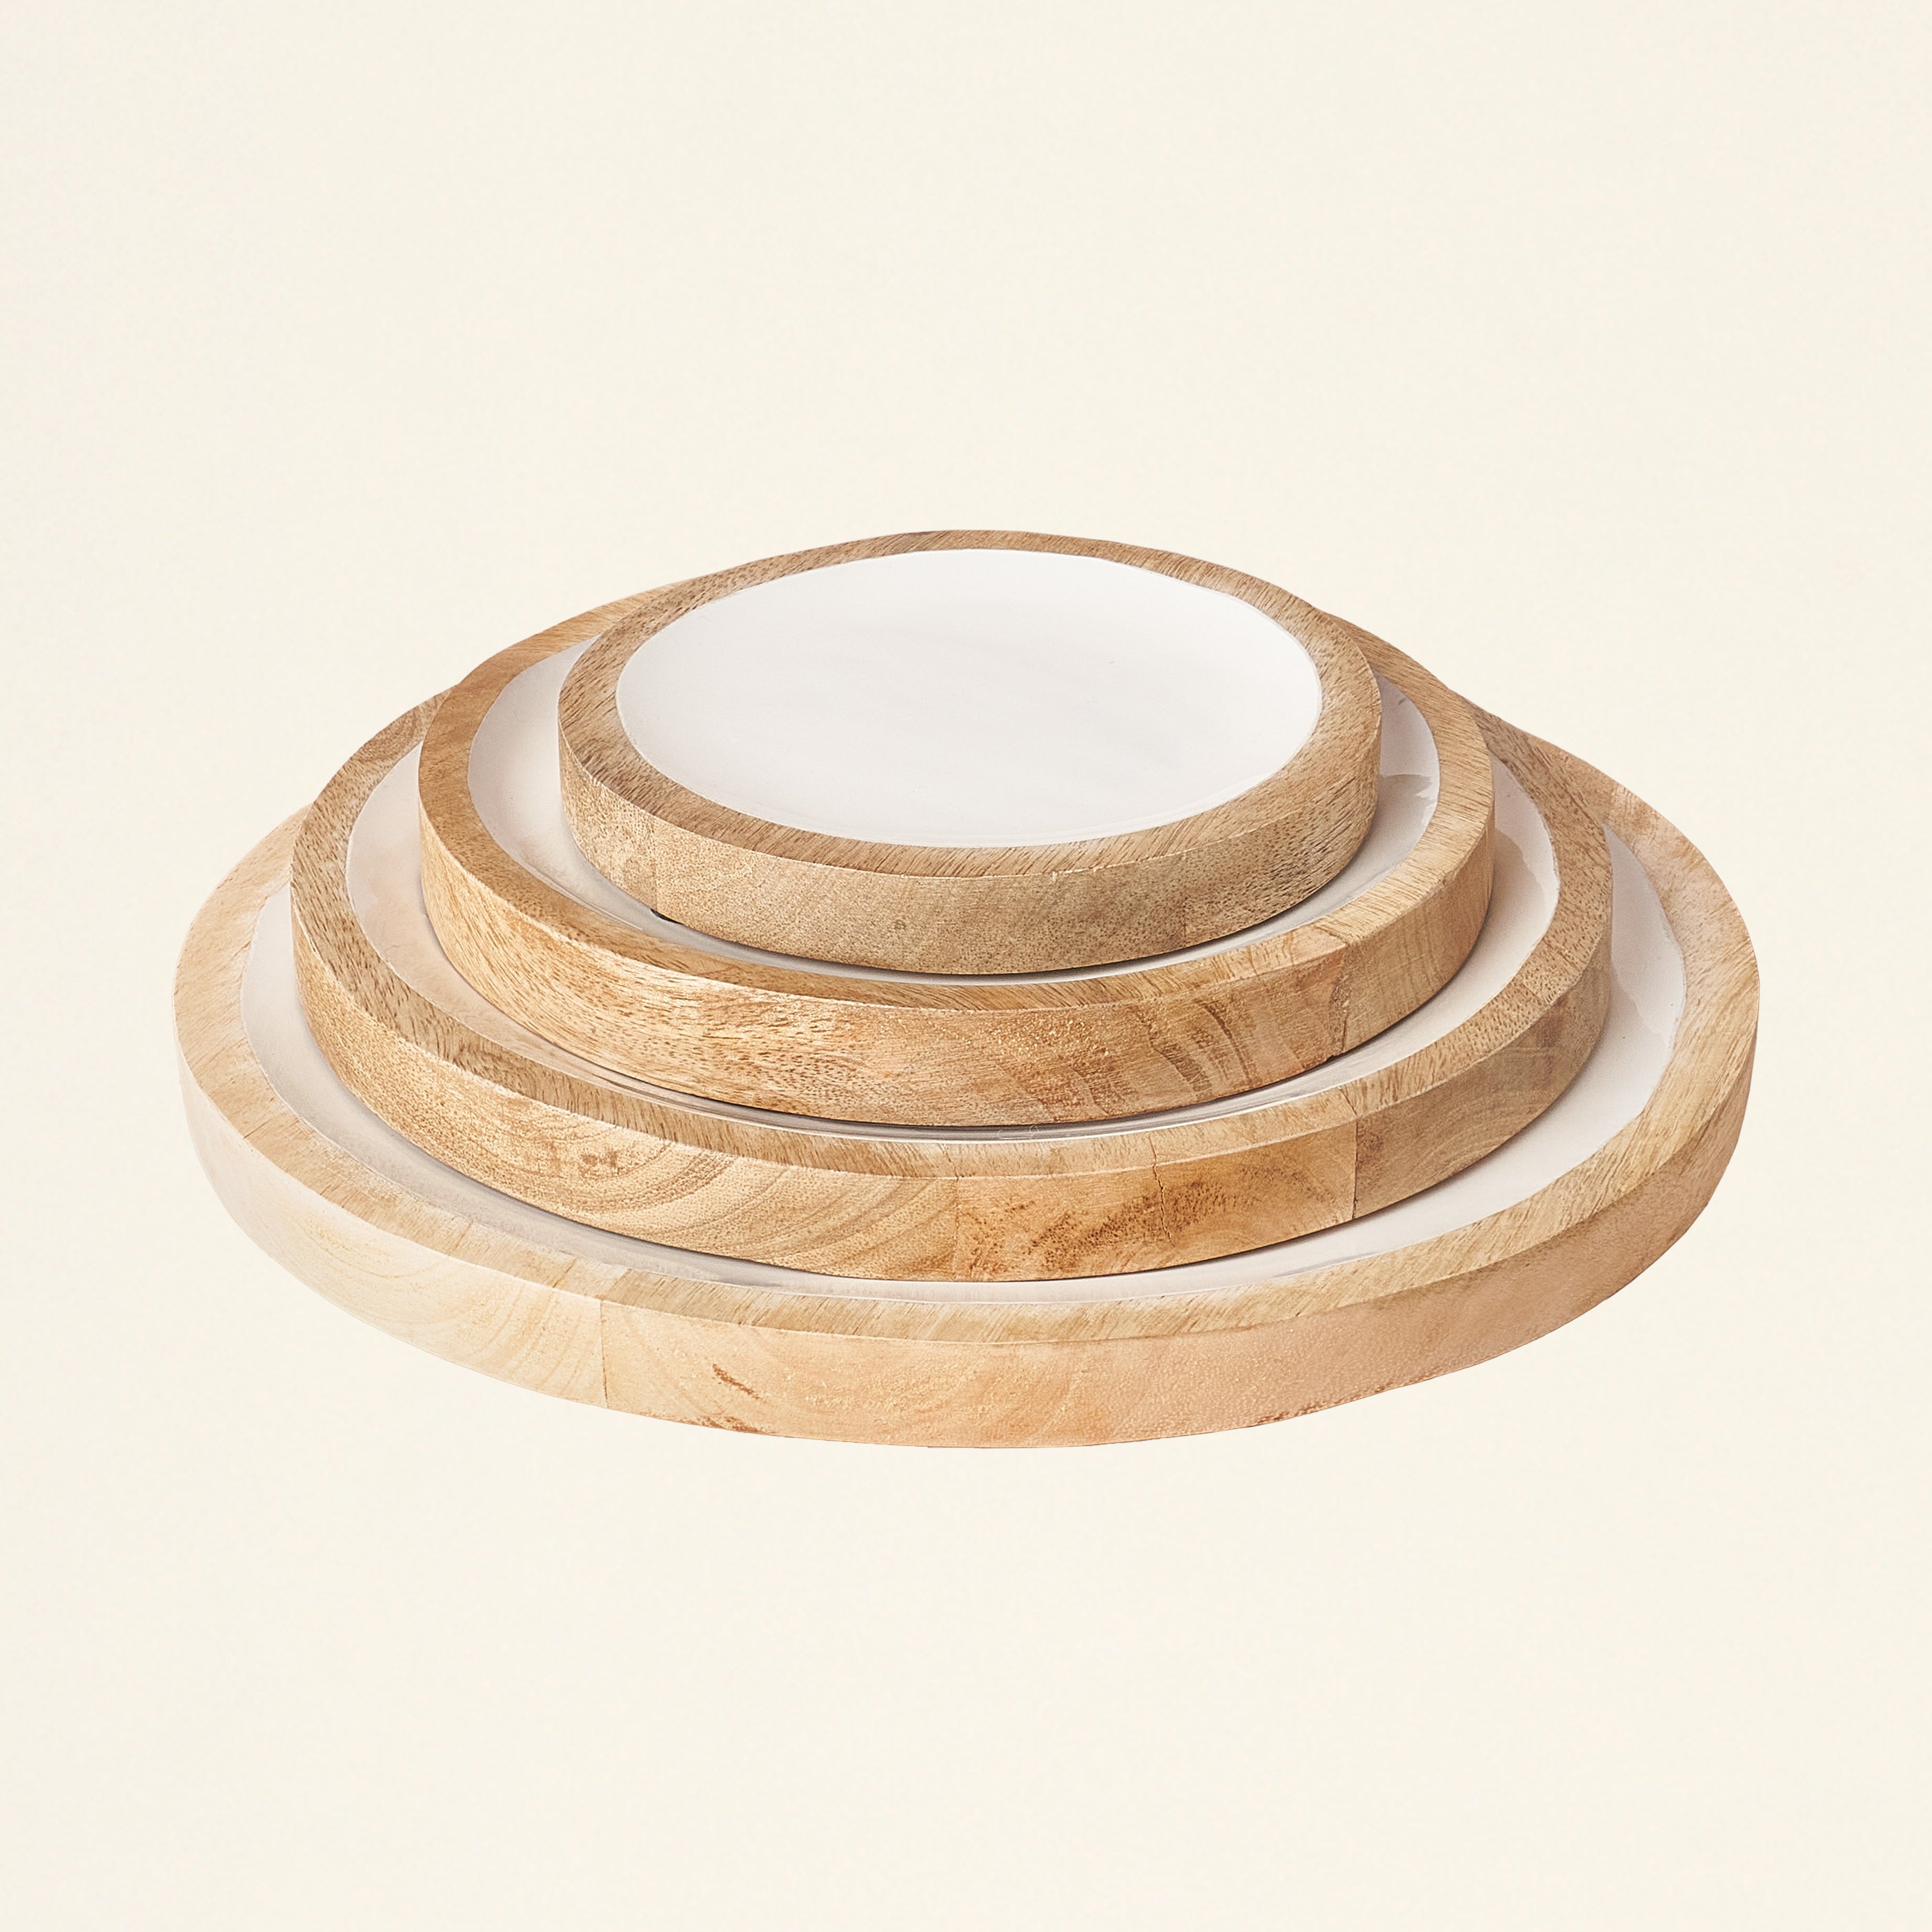 Round Enameled Wood Tray